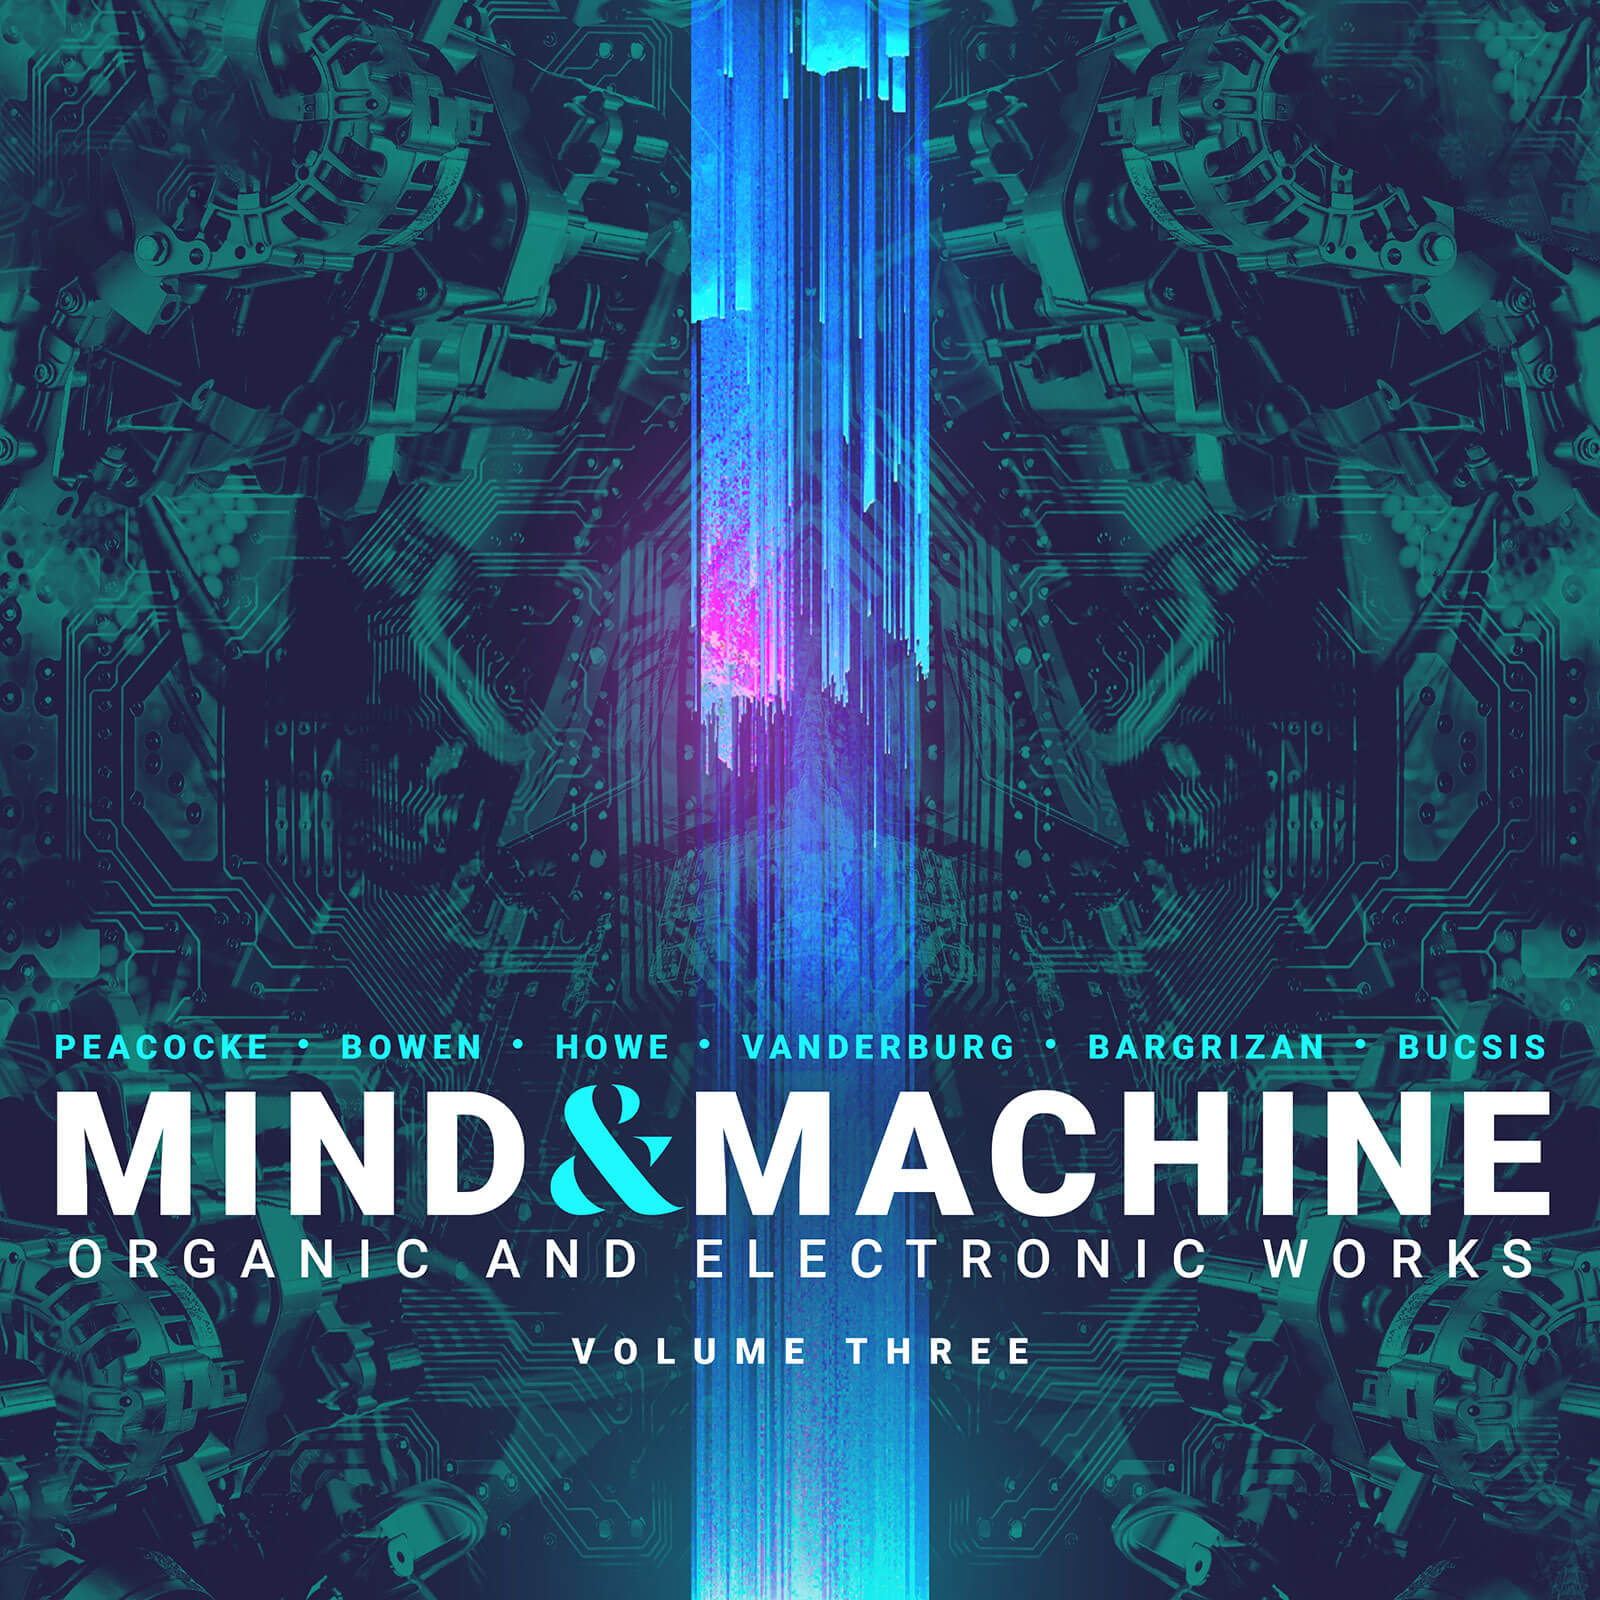 Mind & Machine, Volume Three